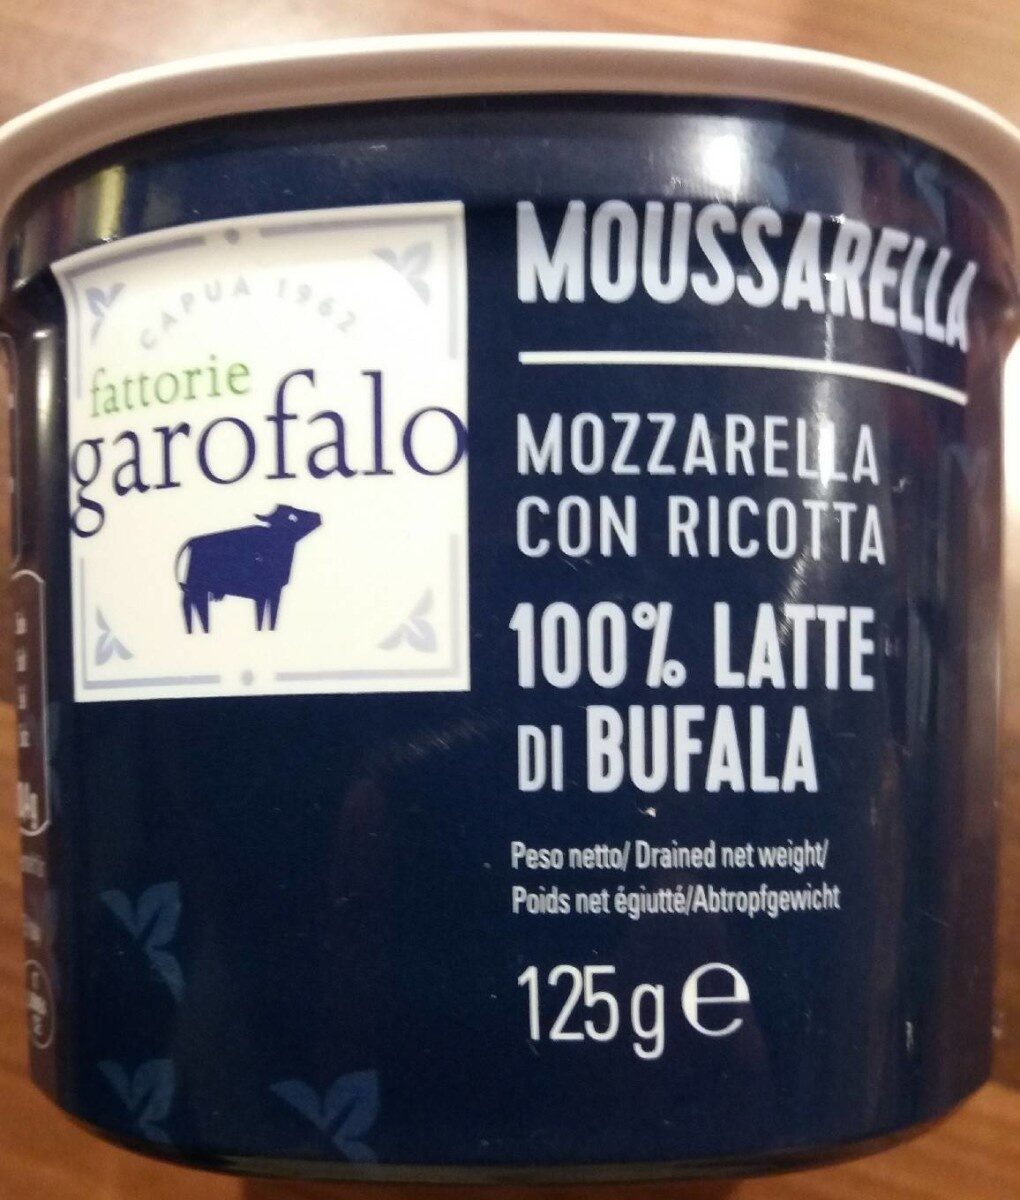 Mozzarella con ricotta 100% latte di Bufala - Product - fr